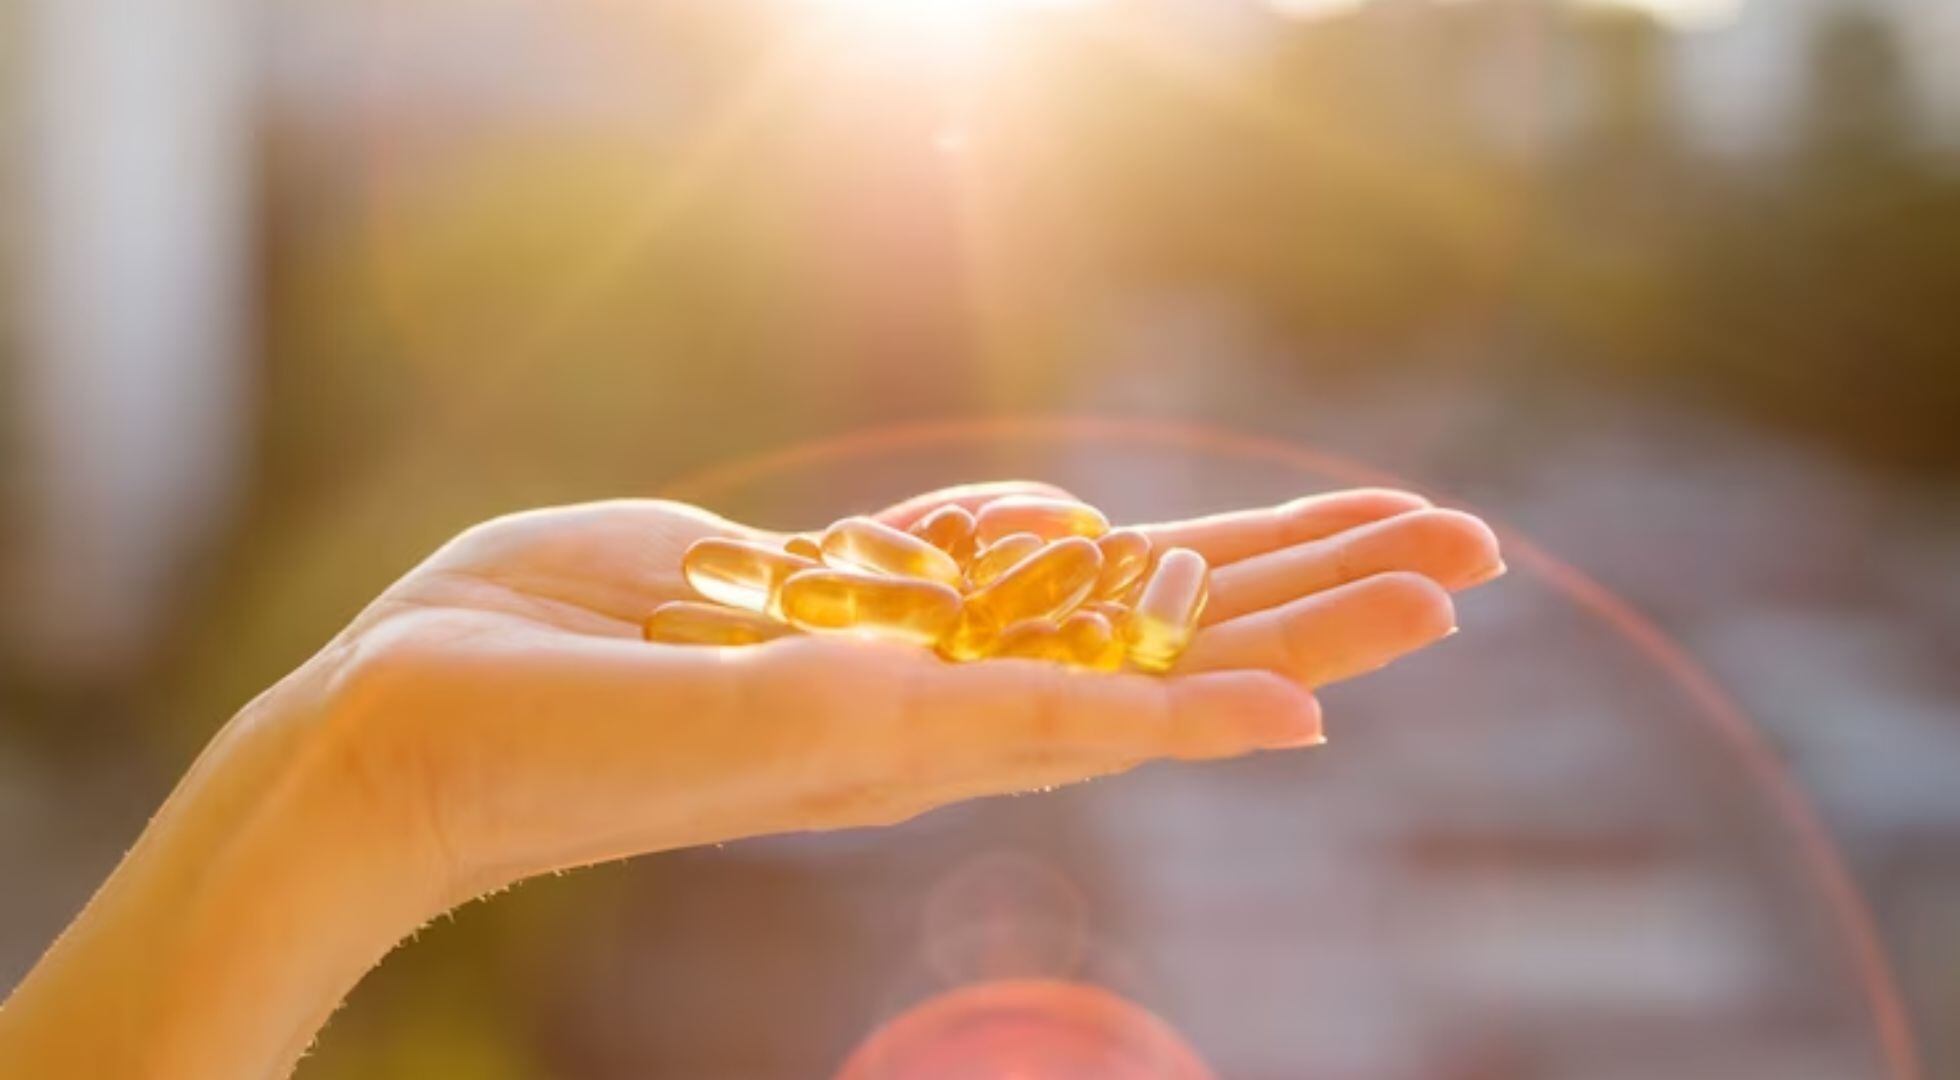 La OMS resalta el papel de la vitamina D más allá de la salud ósea, incluyendo el fortalecimiento de defensas naturales